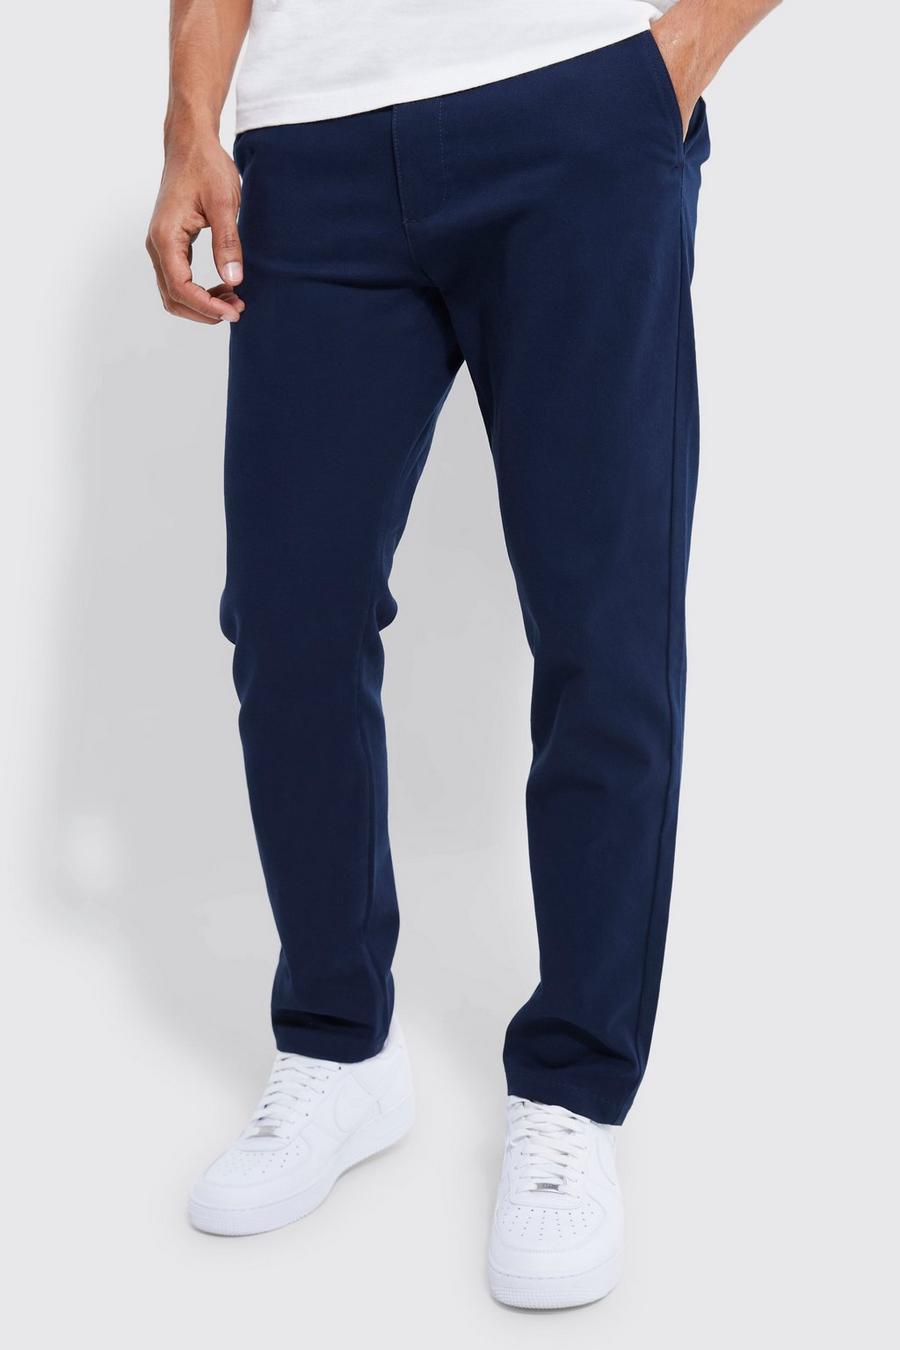 Pantalón chino ajustado con cintura fija, Navy azul marino